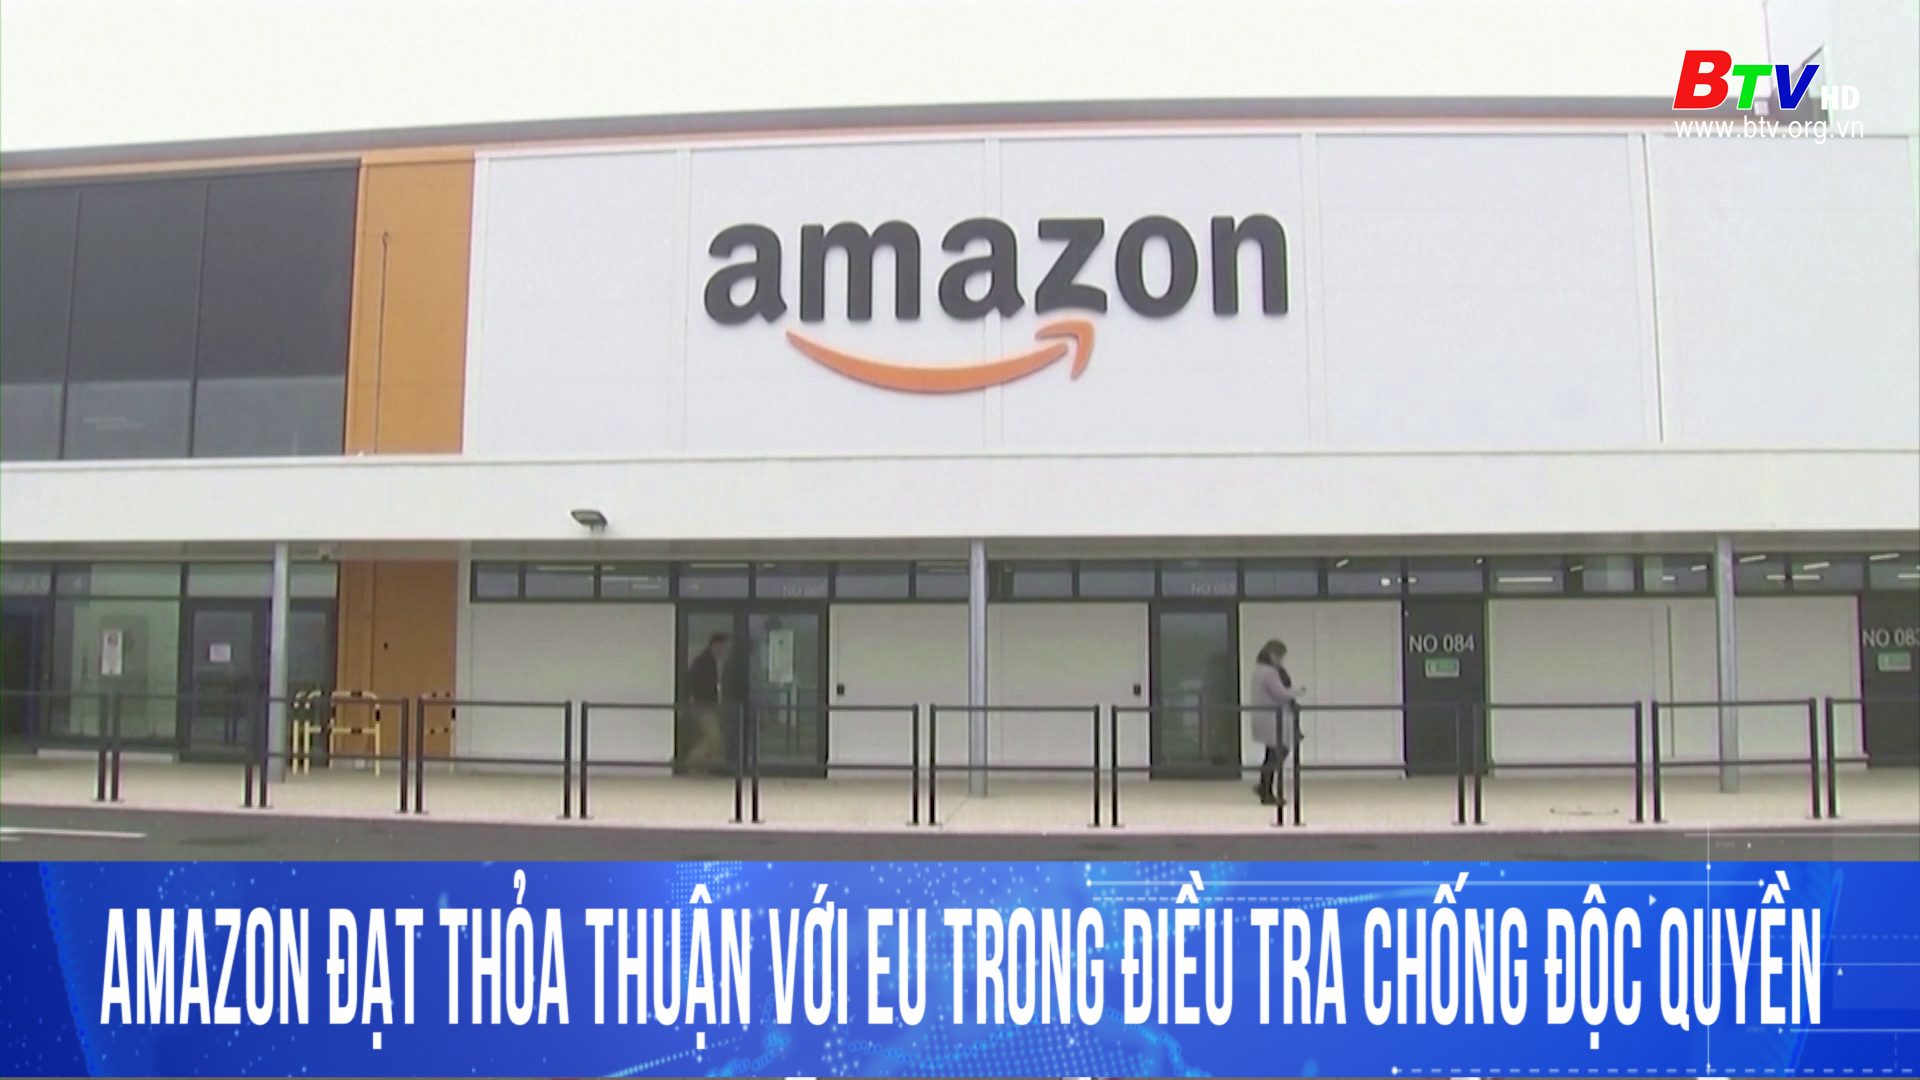 Amazon đạt thỏa thuận với EU trong điều tra chống độc quyền